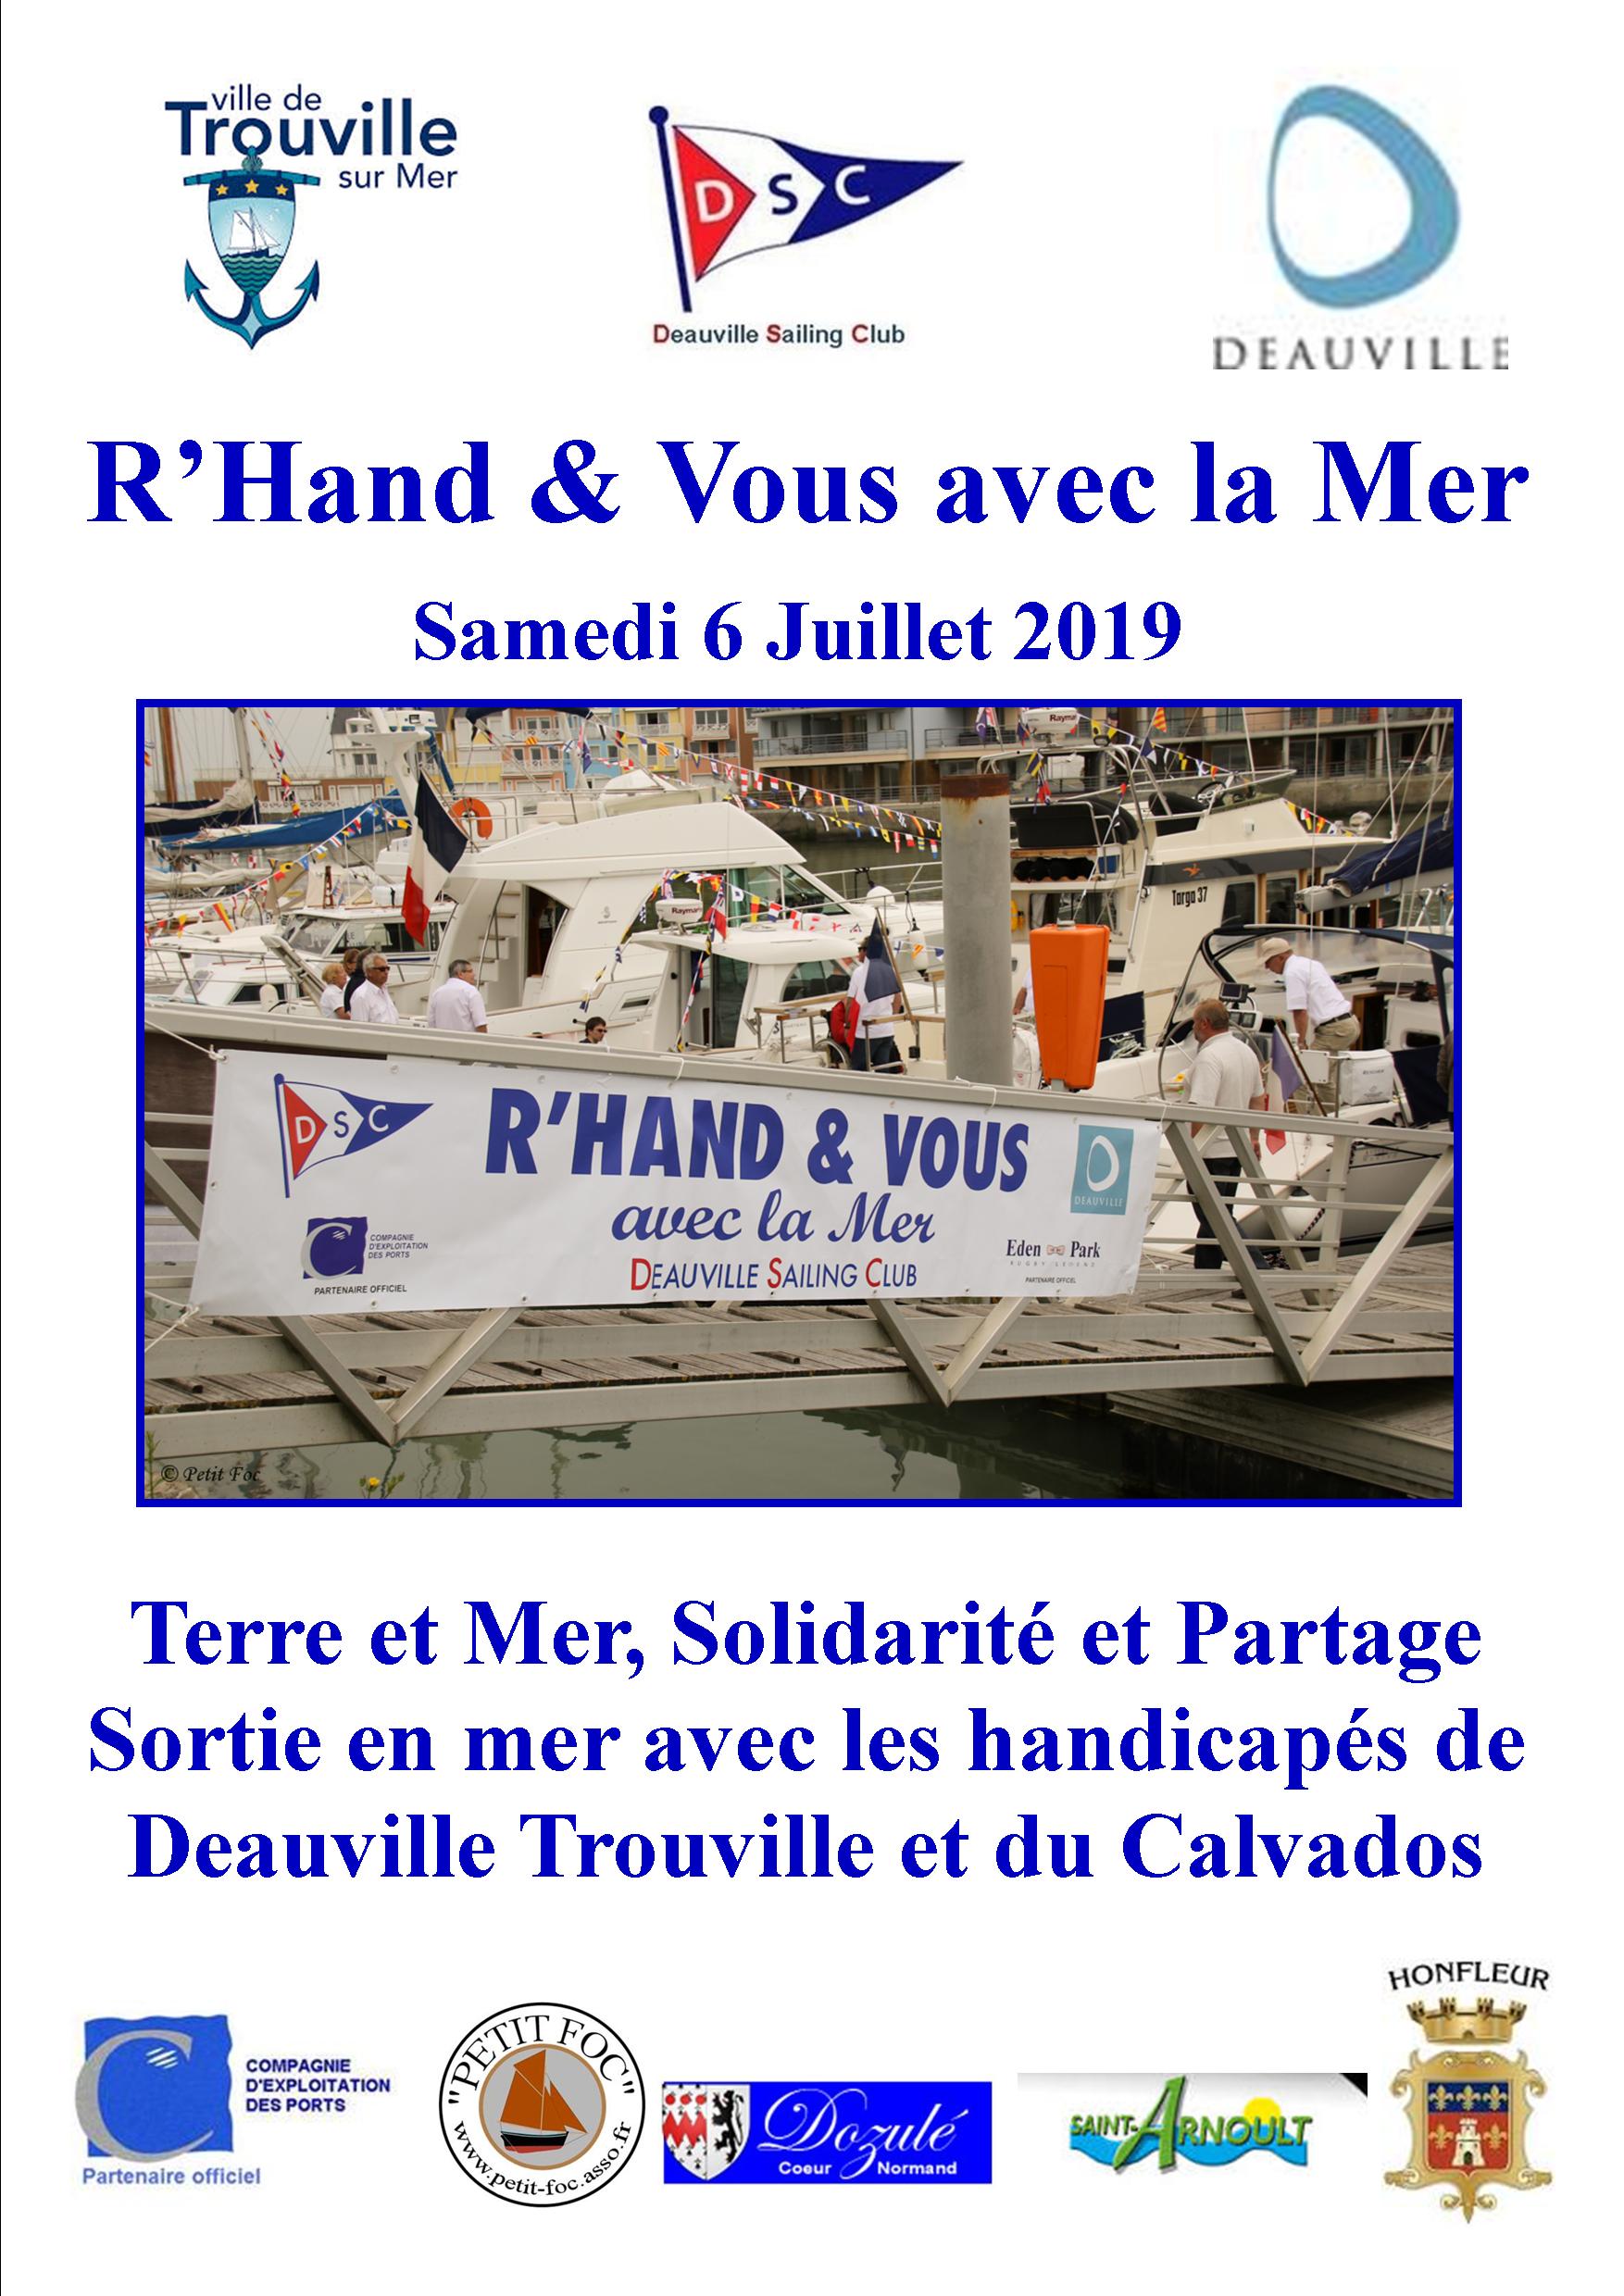 R'Hand & Vous 2019 affiche